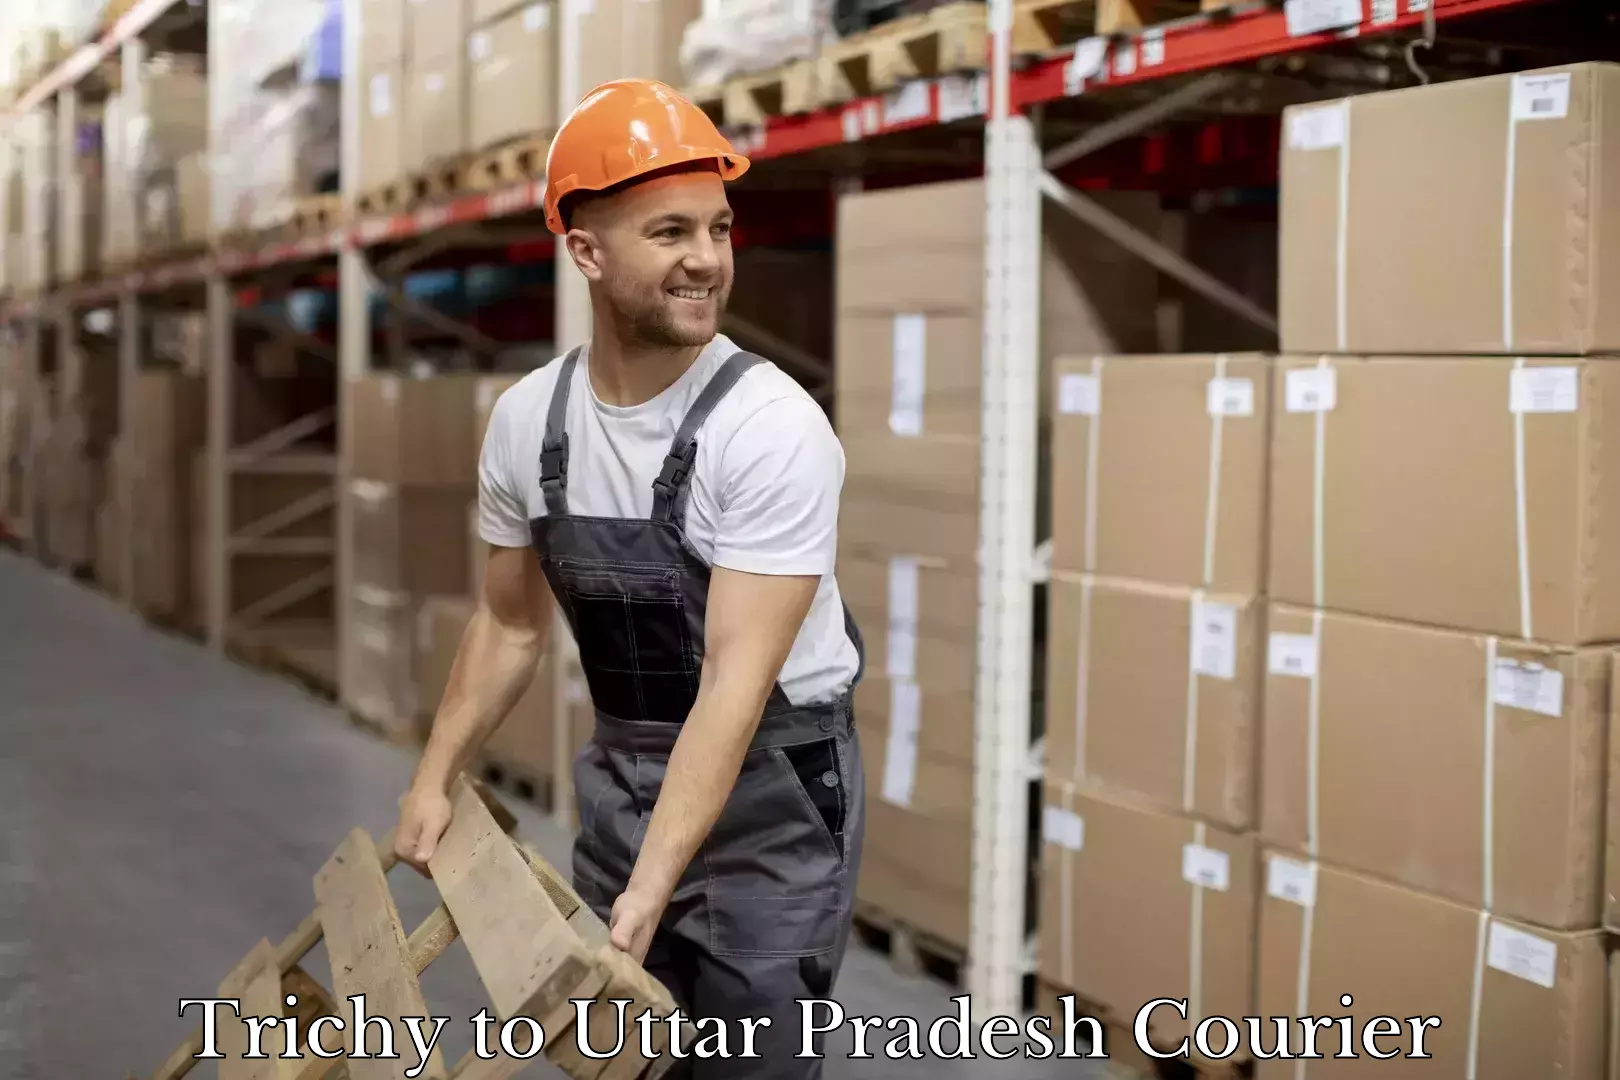 Cargo courier service in Trichy to Uttar Pradesh